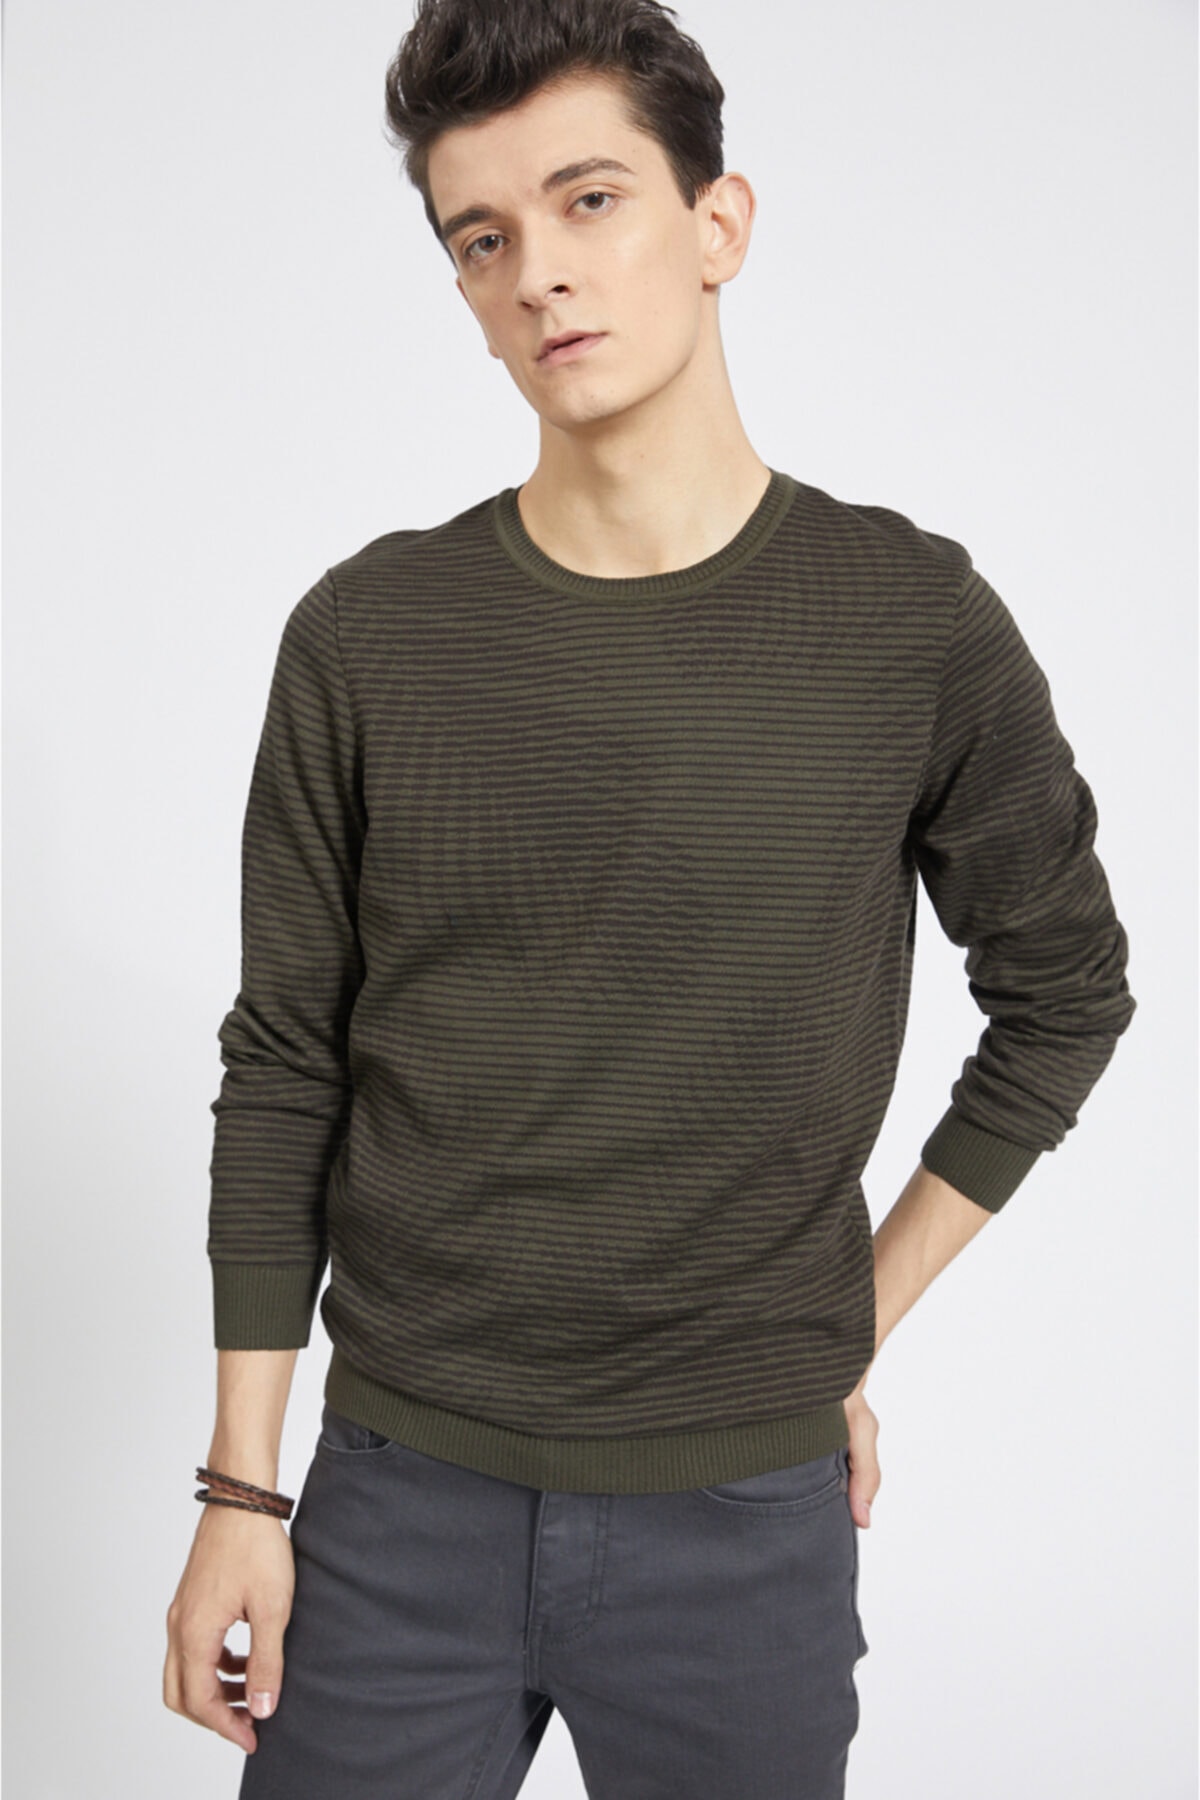 Avva Men's Khaki Crew Neck Jacquard Sweater